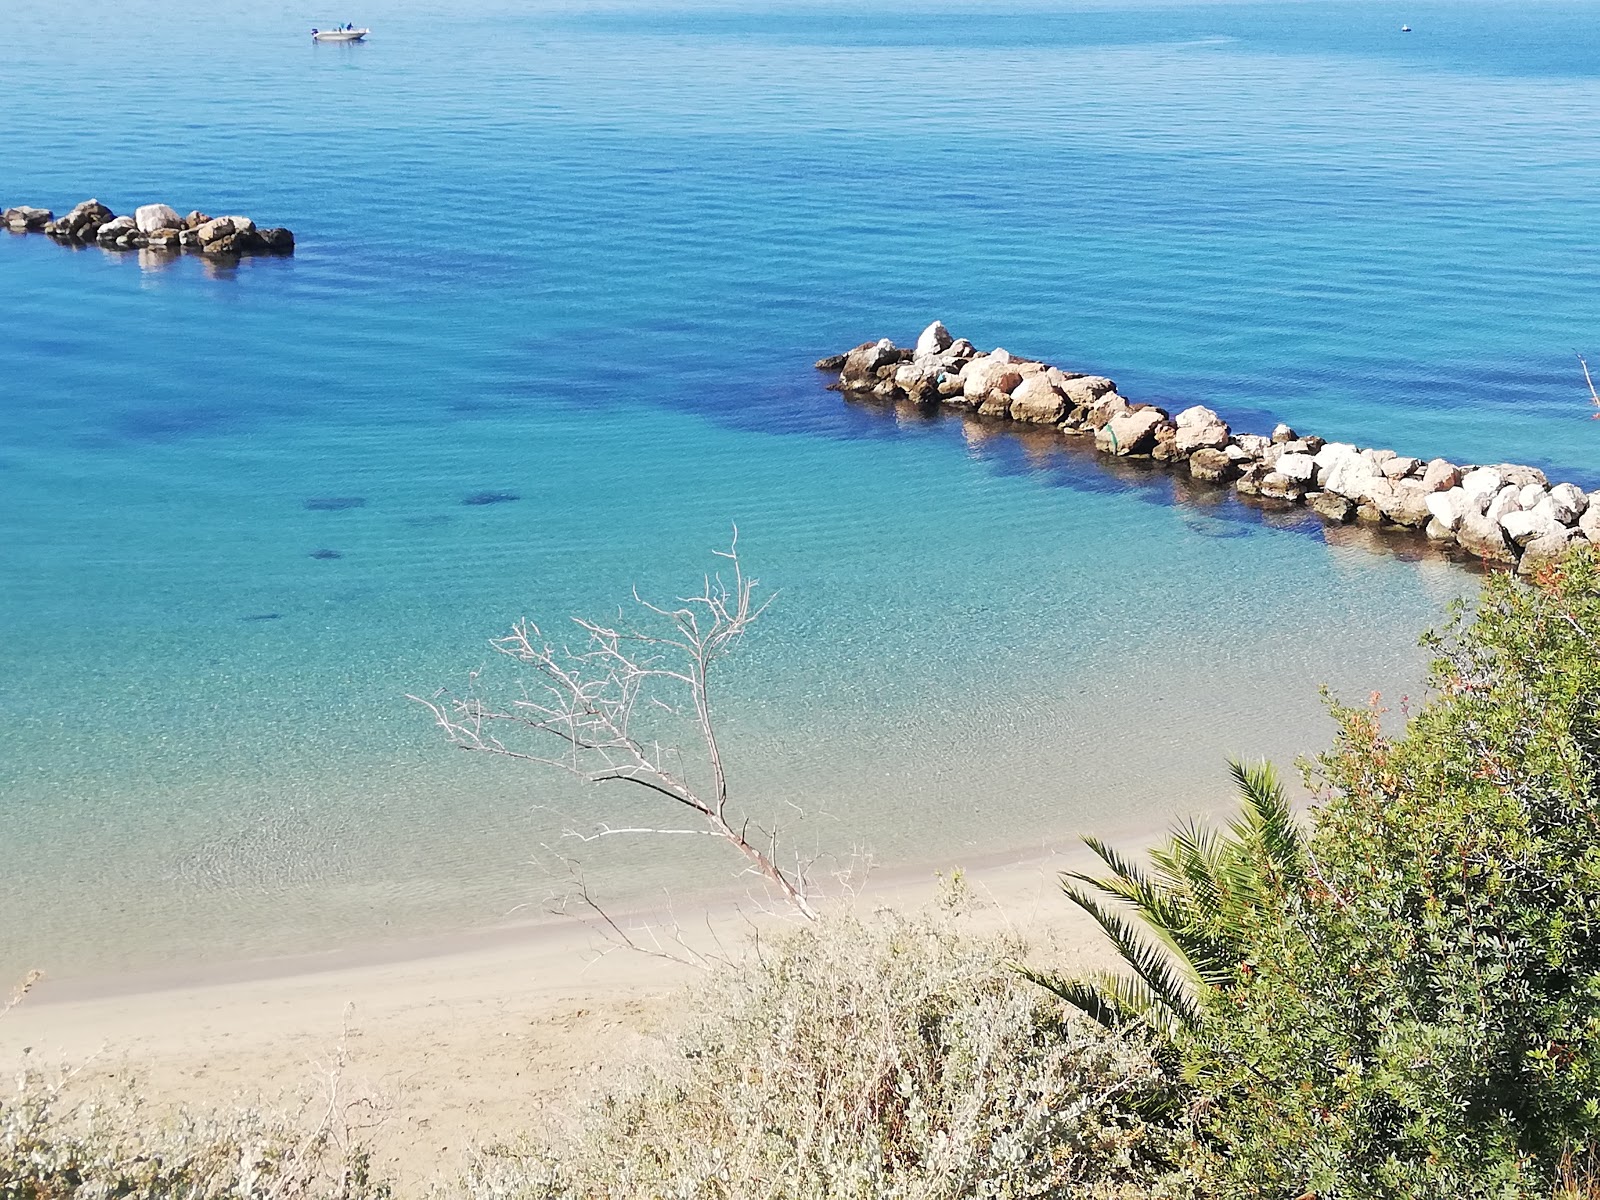 Lido Taranto'in fotoğrafı kahverengi kum yüzey ile